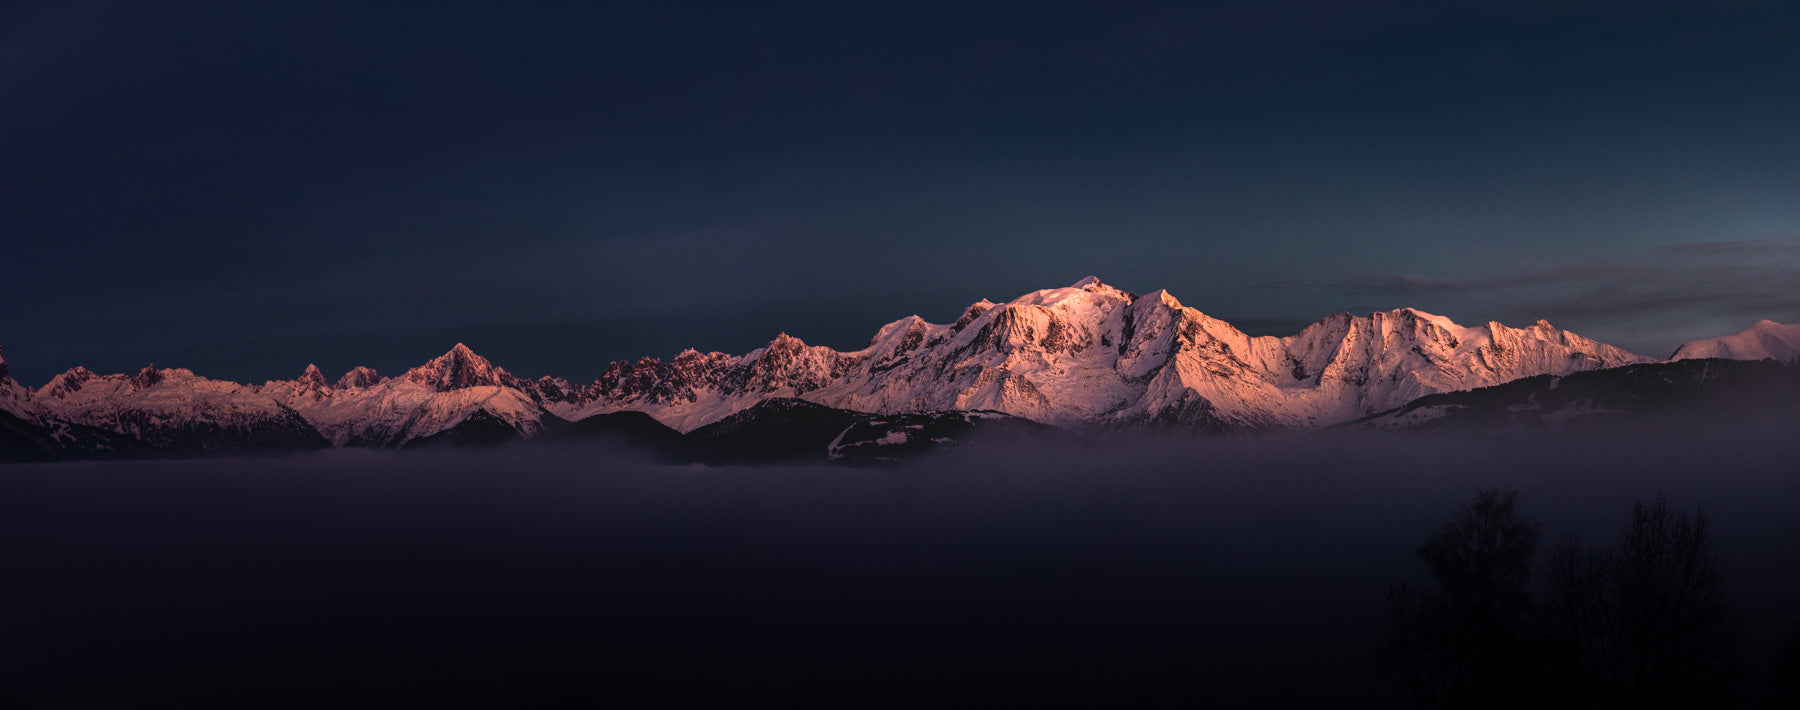 Panorama de paysage des Alpes et du mont BLANC